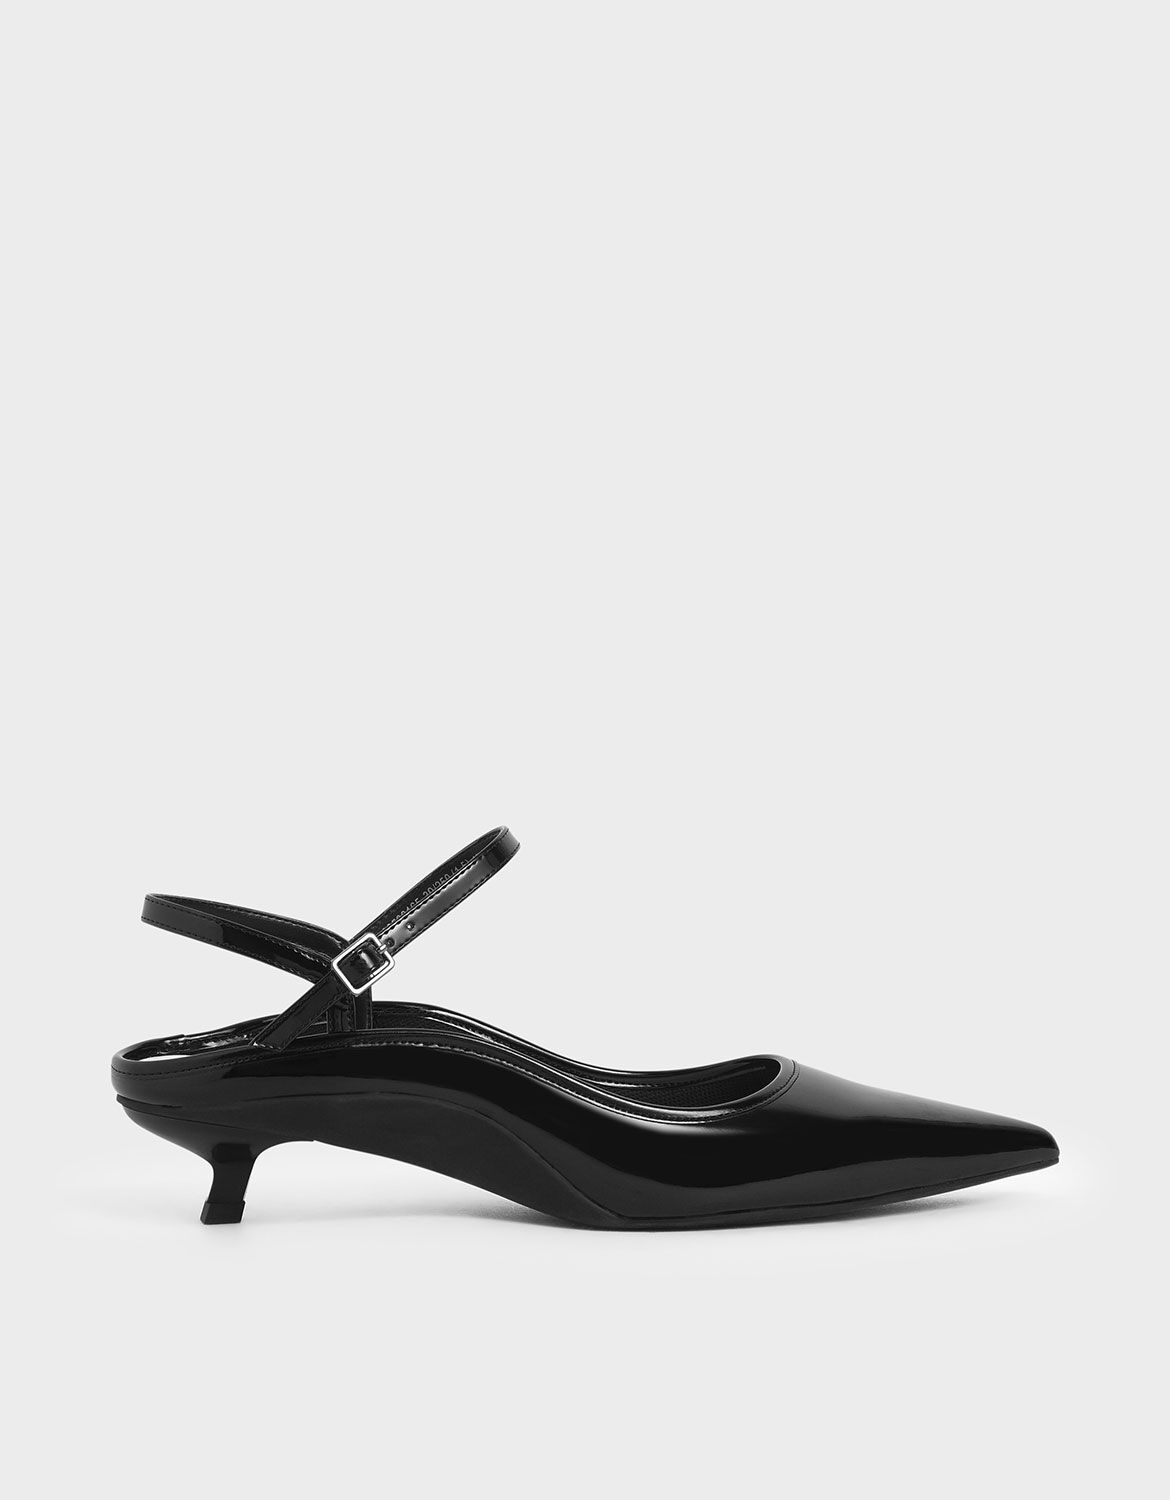 black strap kitten heels